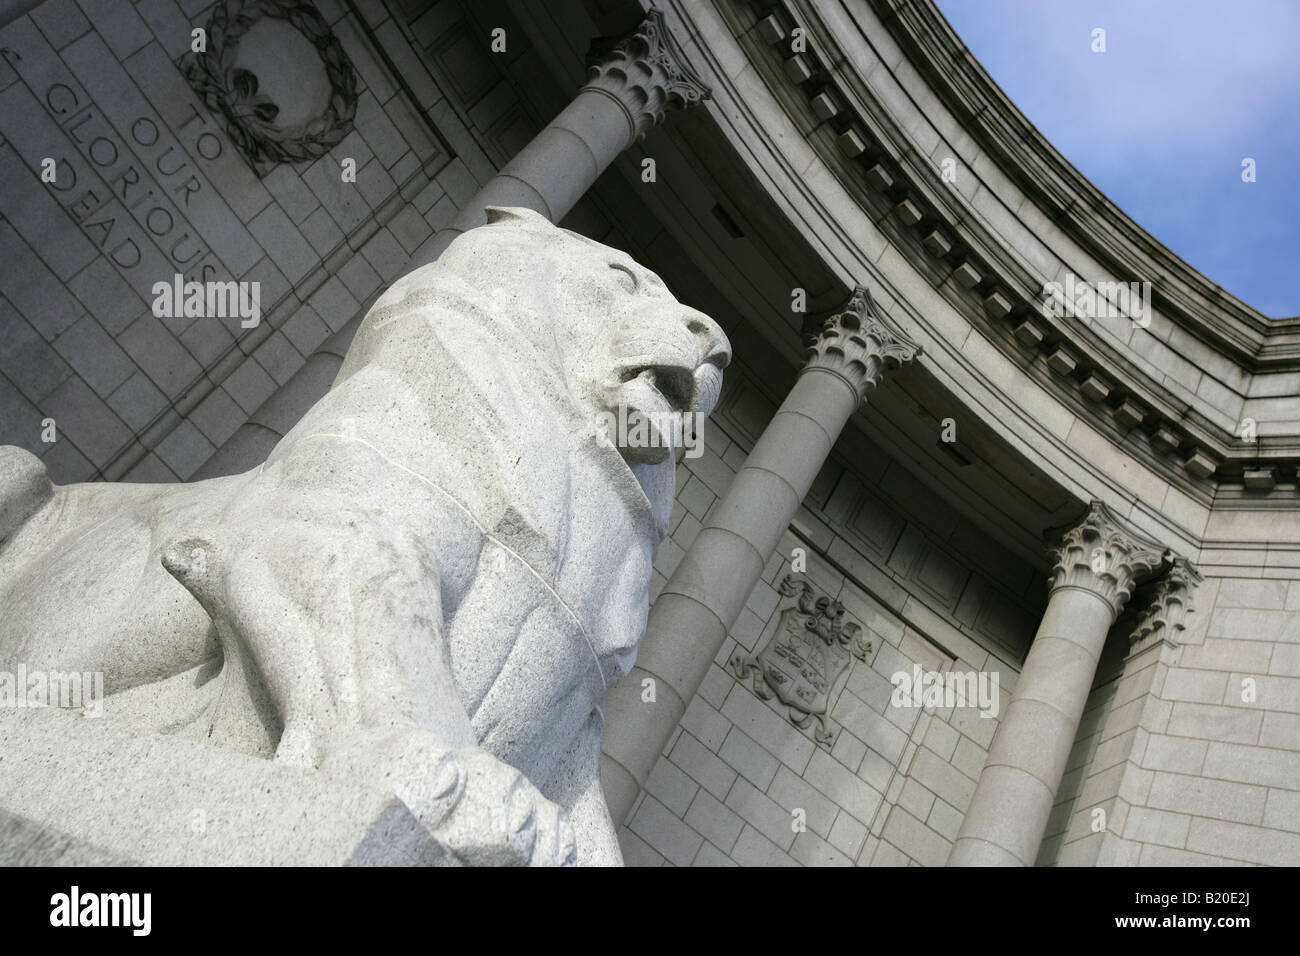 City of Aberdeen, Scotland. Close-up view of the lion sculpture at Aberdeen’s Schoolhill War Memorial. Stock Photo